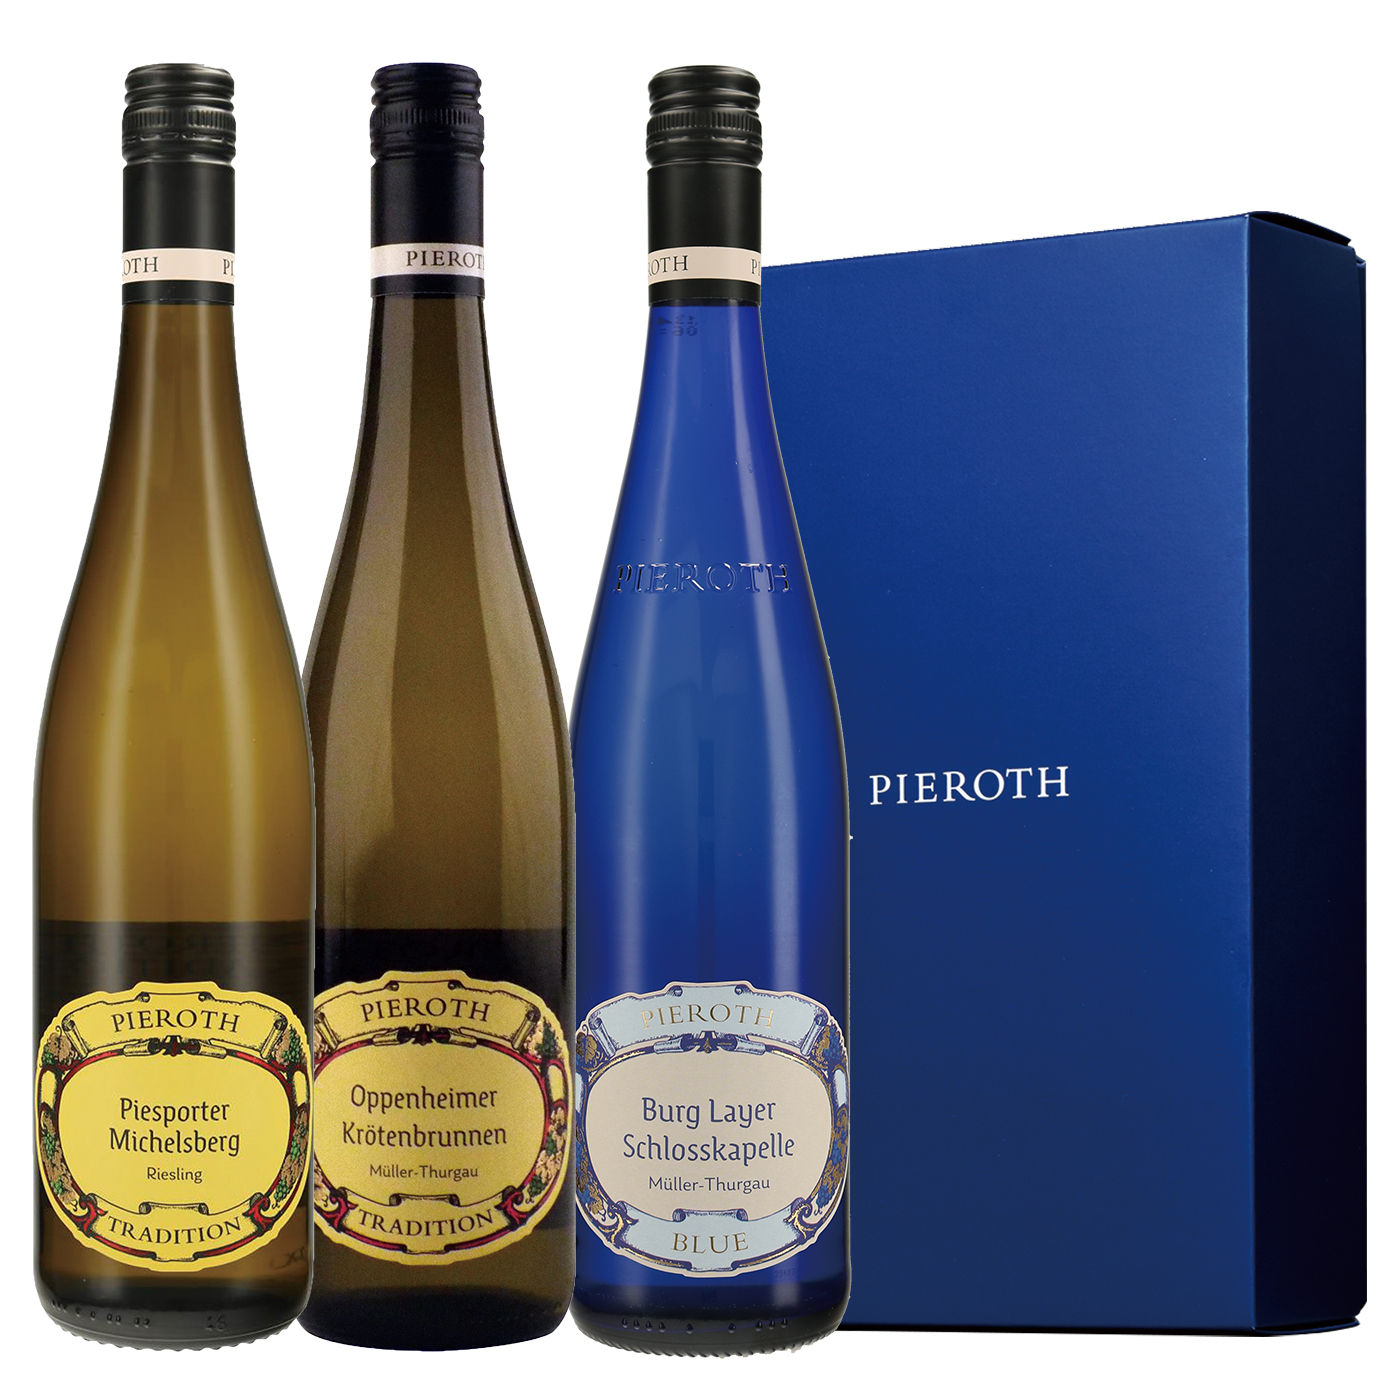 301 ドイツ 白ワイン 3本セット ピーロート・ジャパン ハイエンド・高級ワイン通販